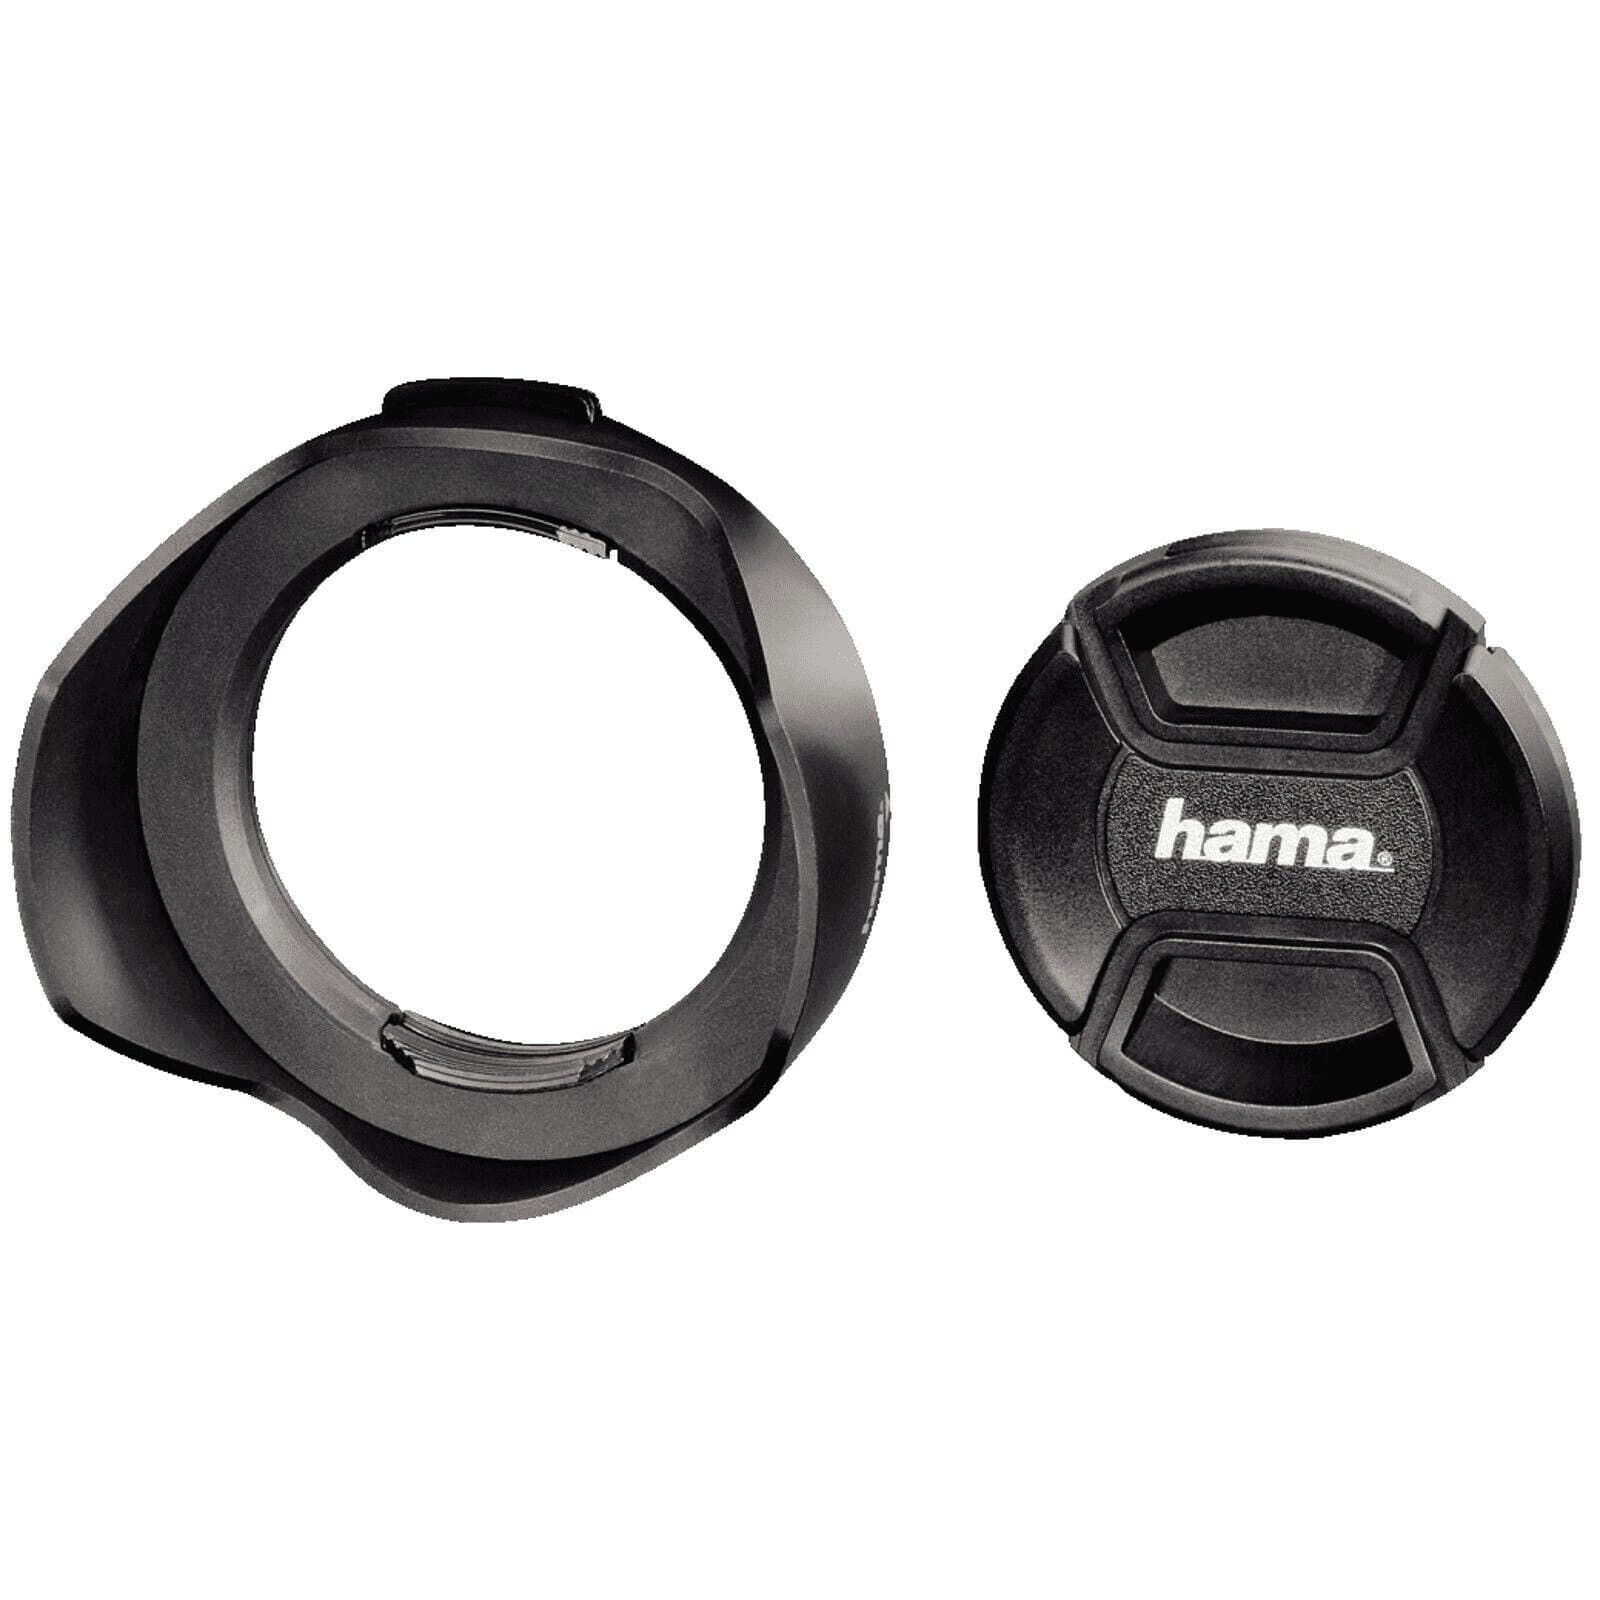 Hama Gegenlichtblende universal mit Objektivdeckel 67mm